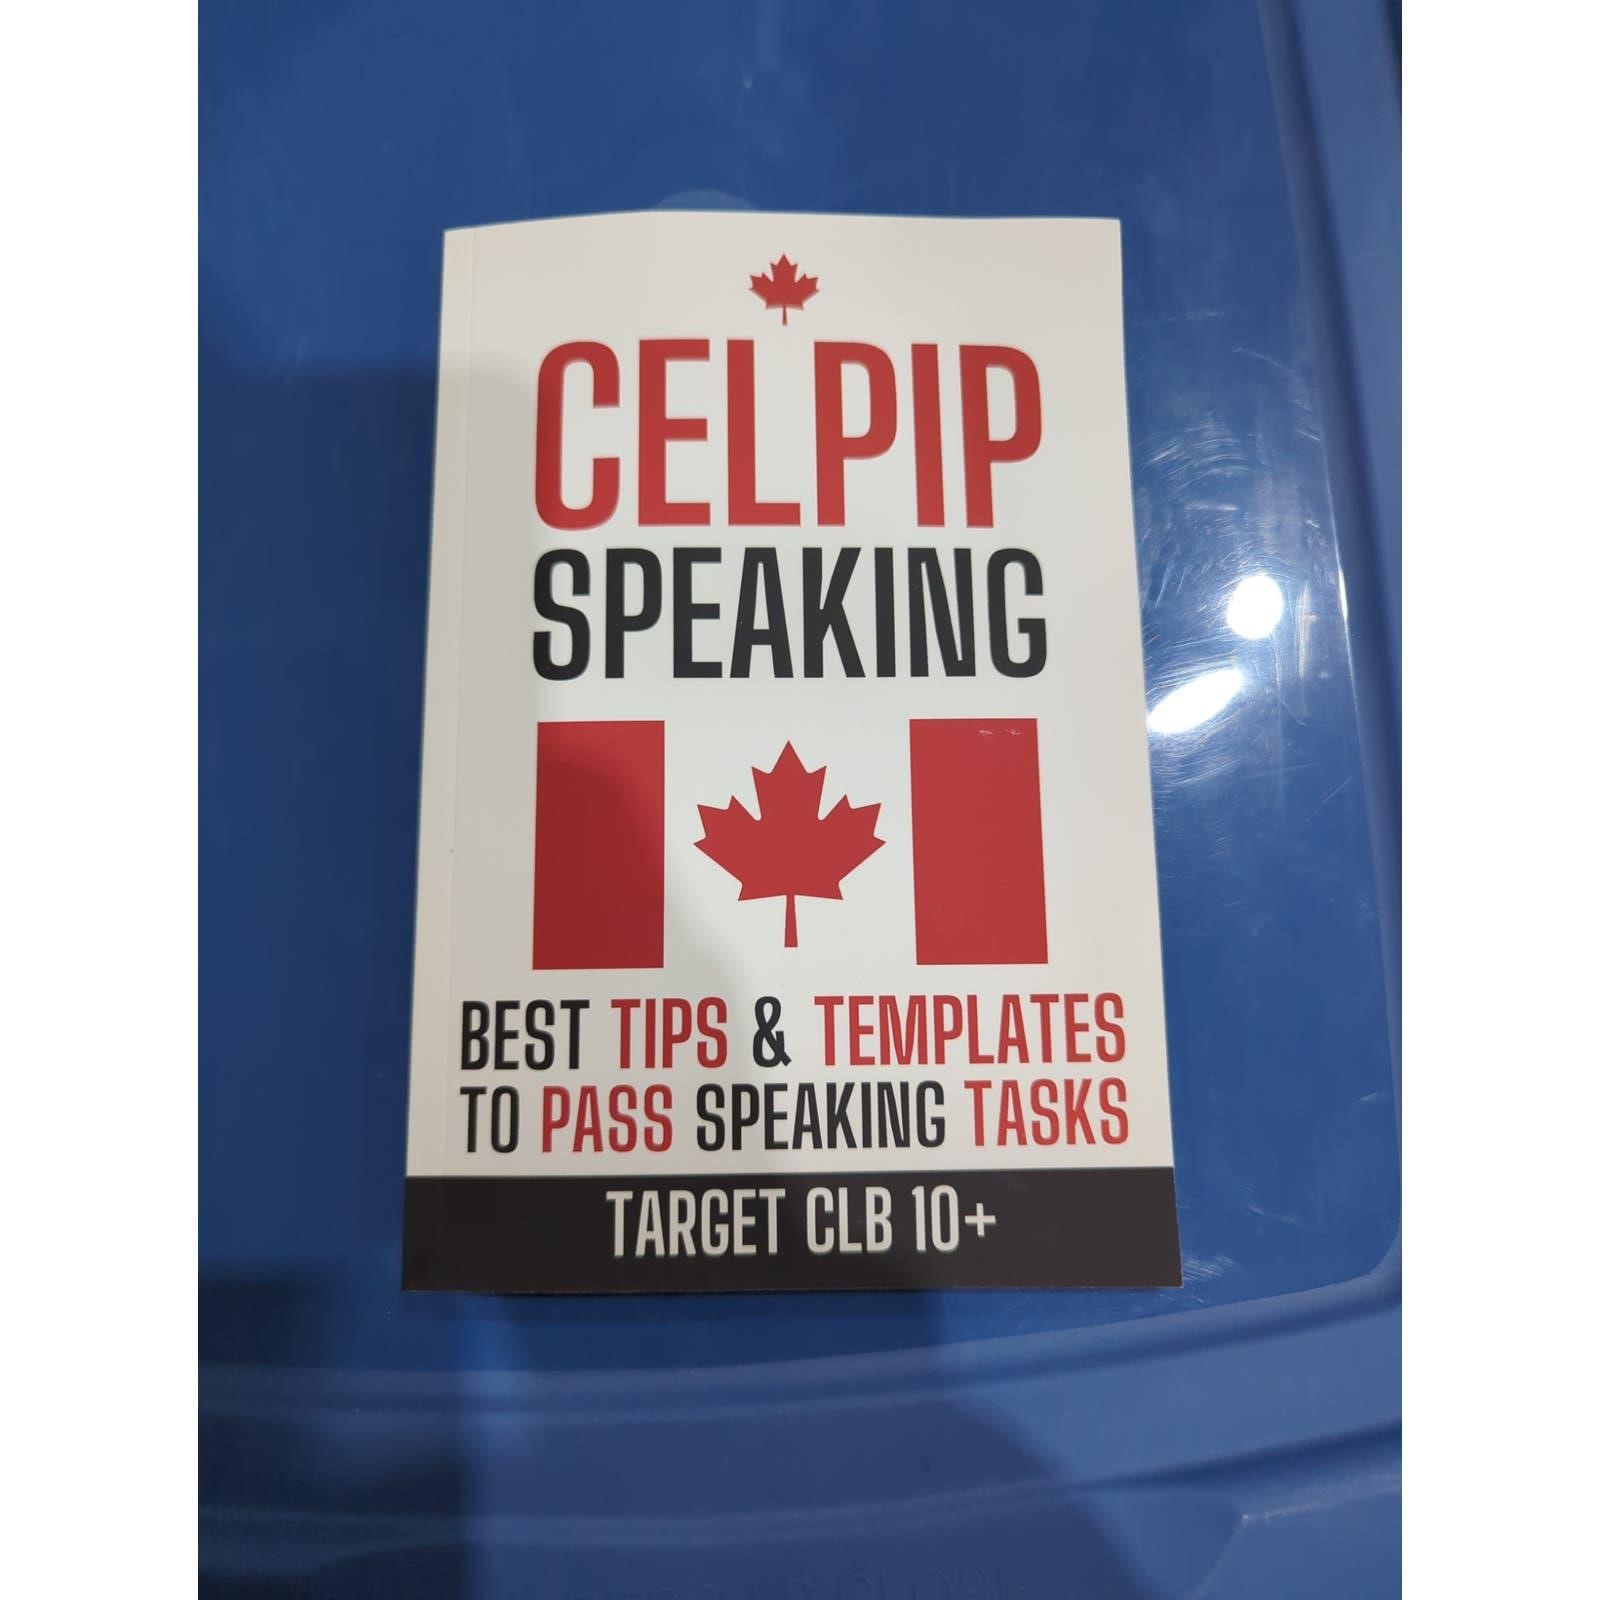 Celpip speaking tips